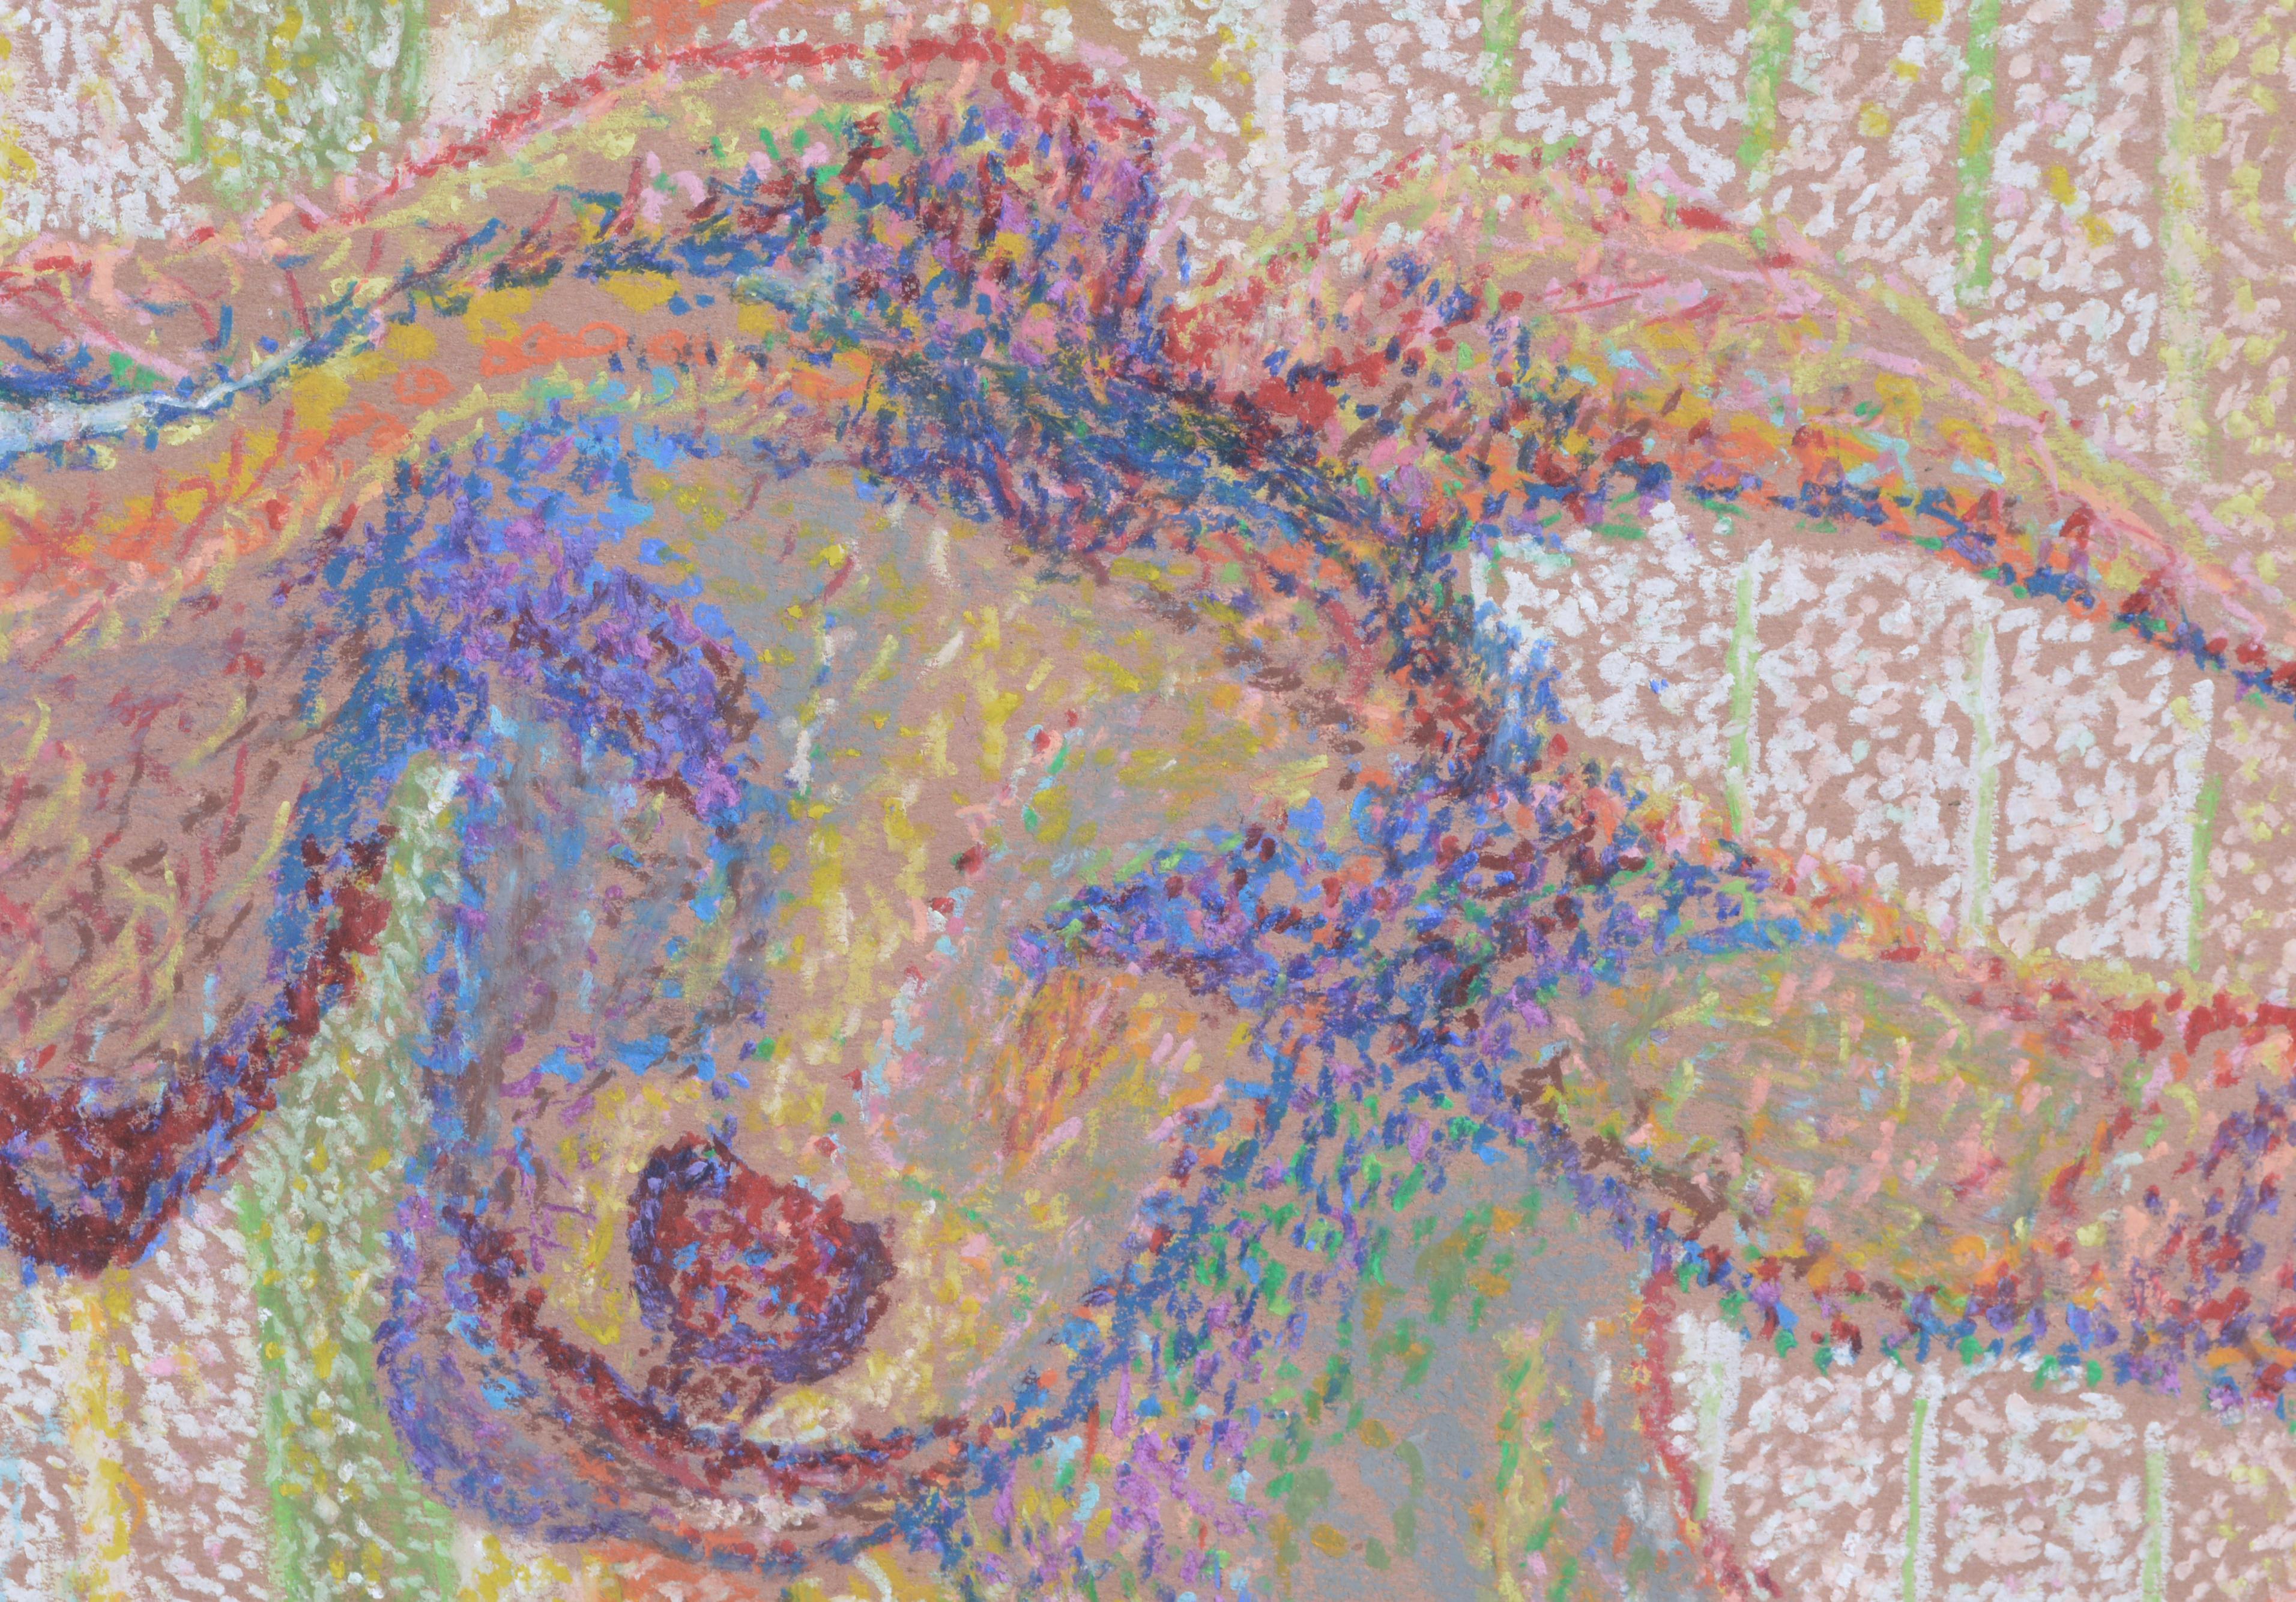 Bunte Ziege, mehrfarbiges, pointillistisches Pastell (Pointillismus), Art, von Karen Druker